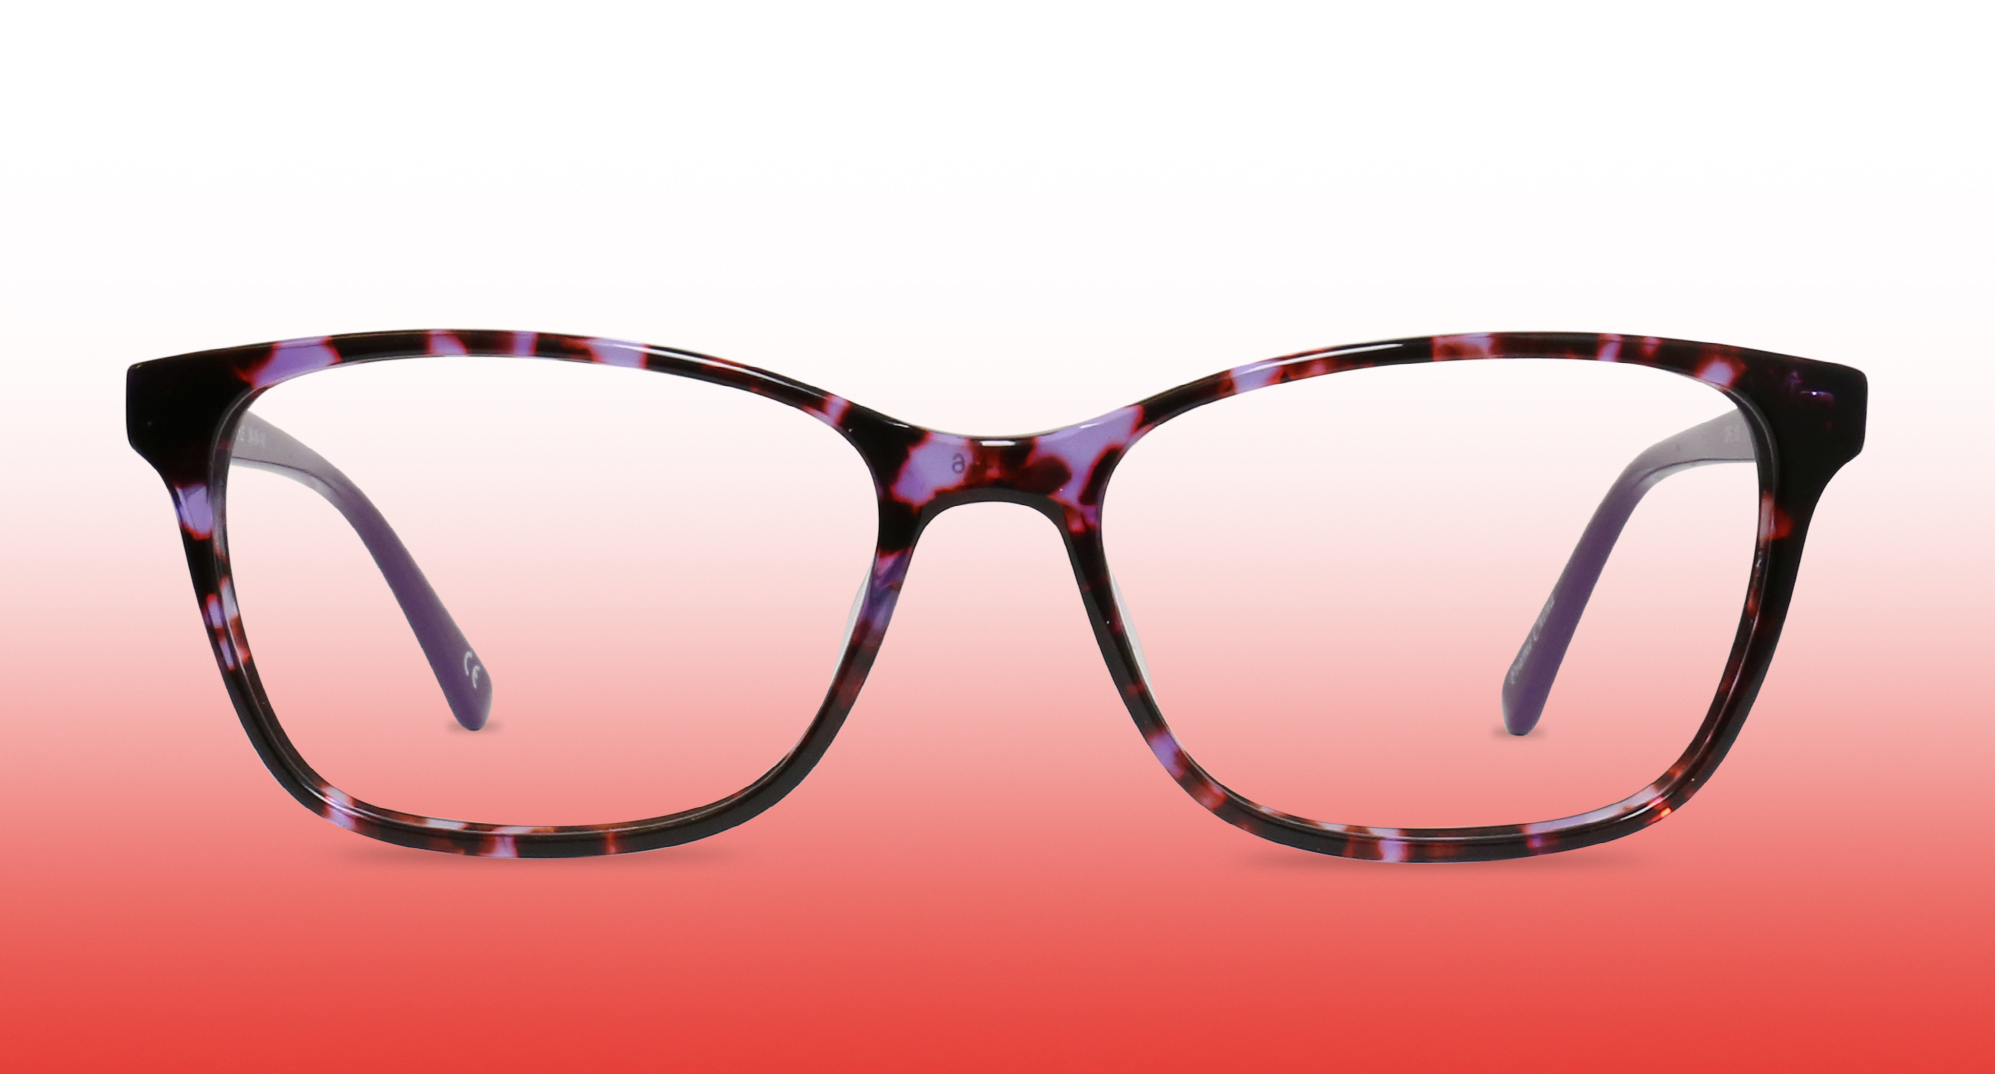 Pair of women's eyeglasses